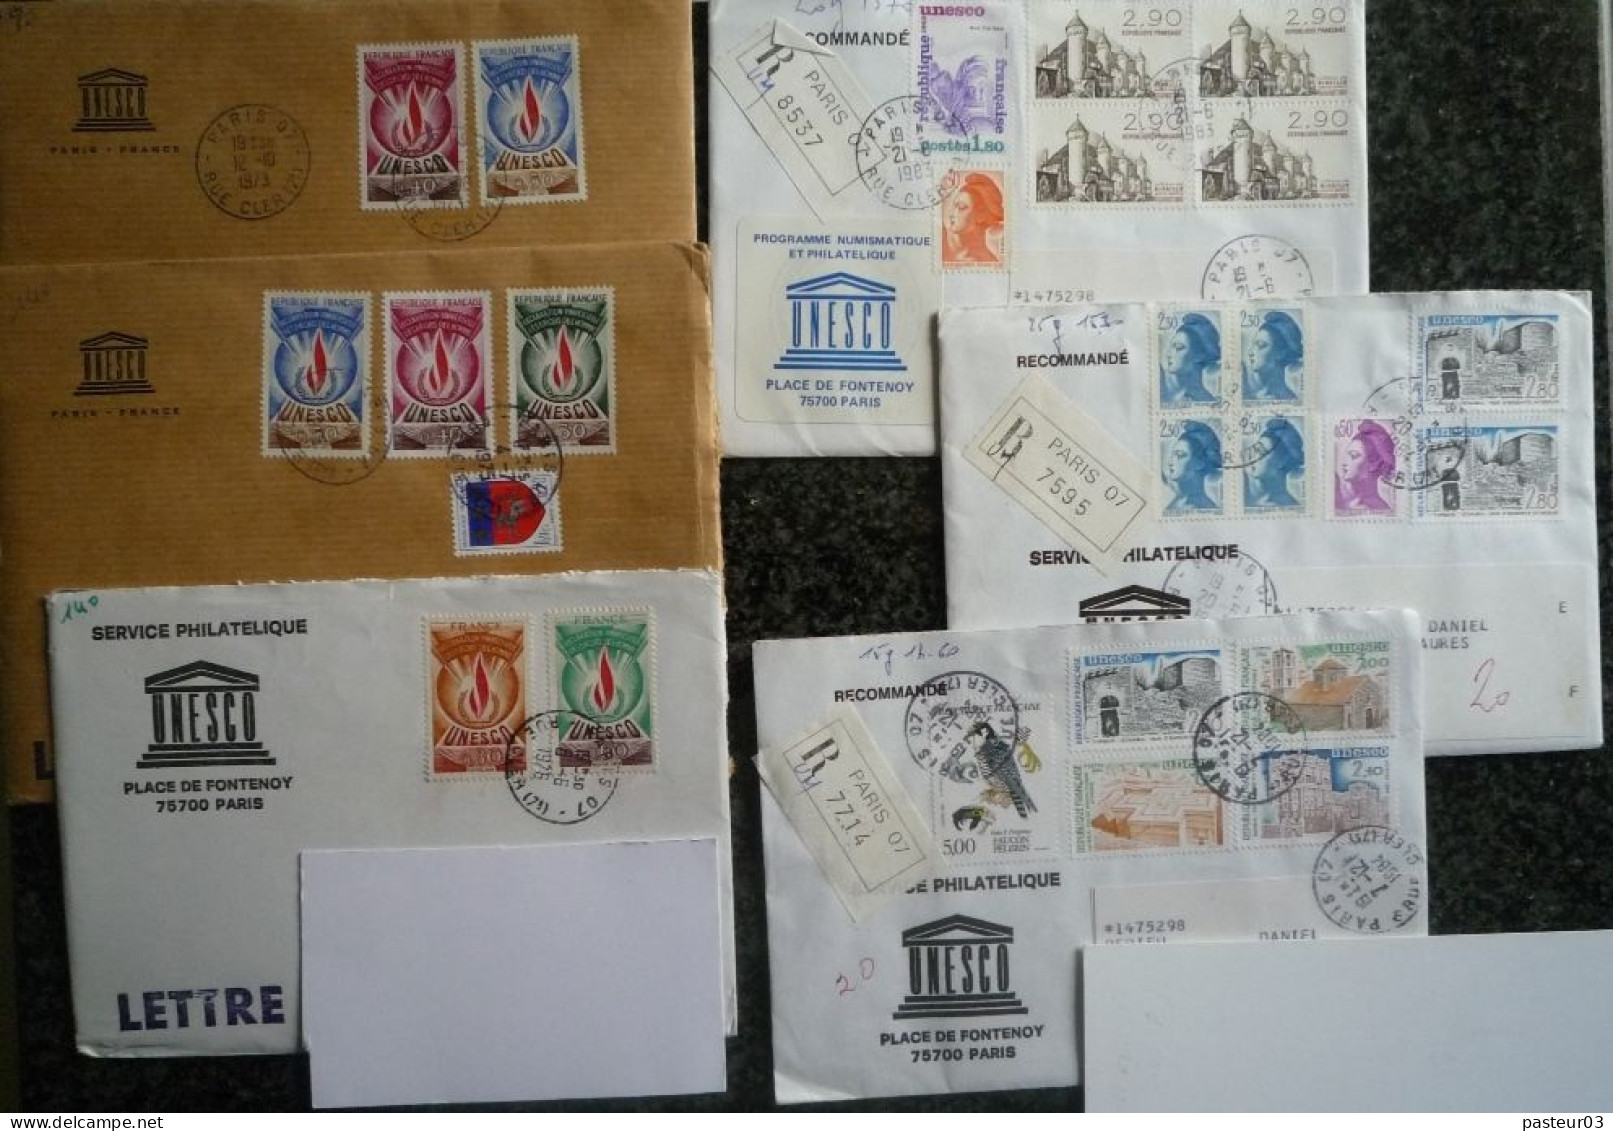 Lot de lettres affranchies avec des timbres de l'Unesco et de la France voir scan